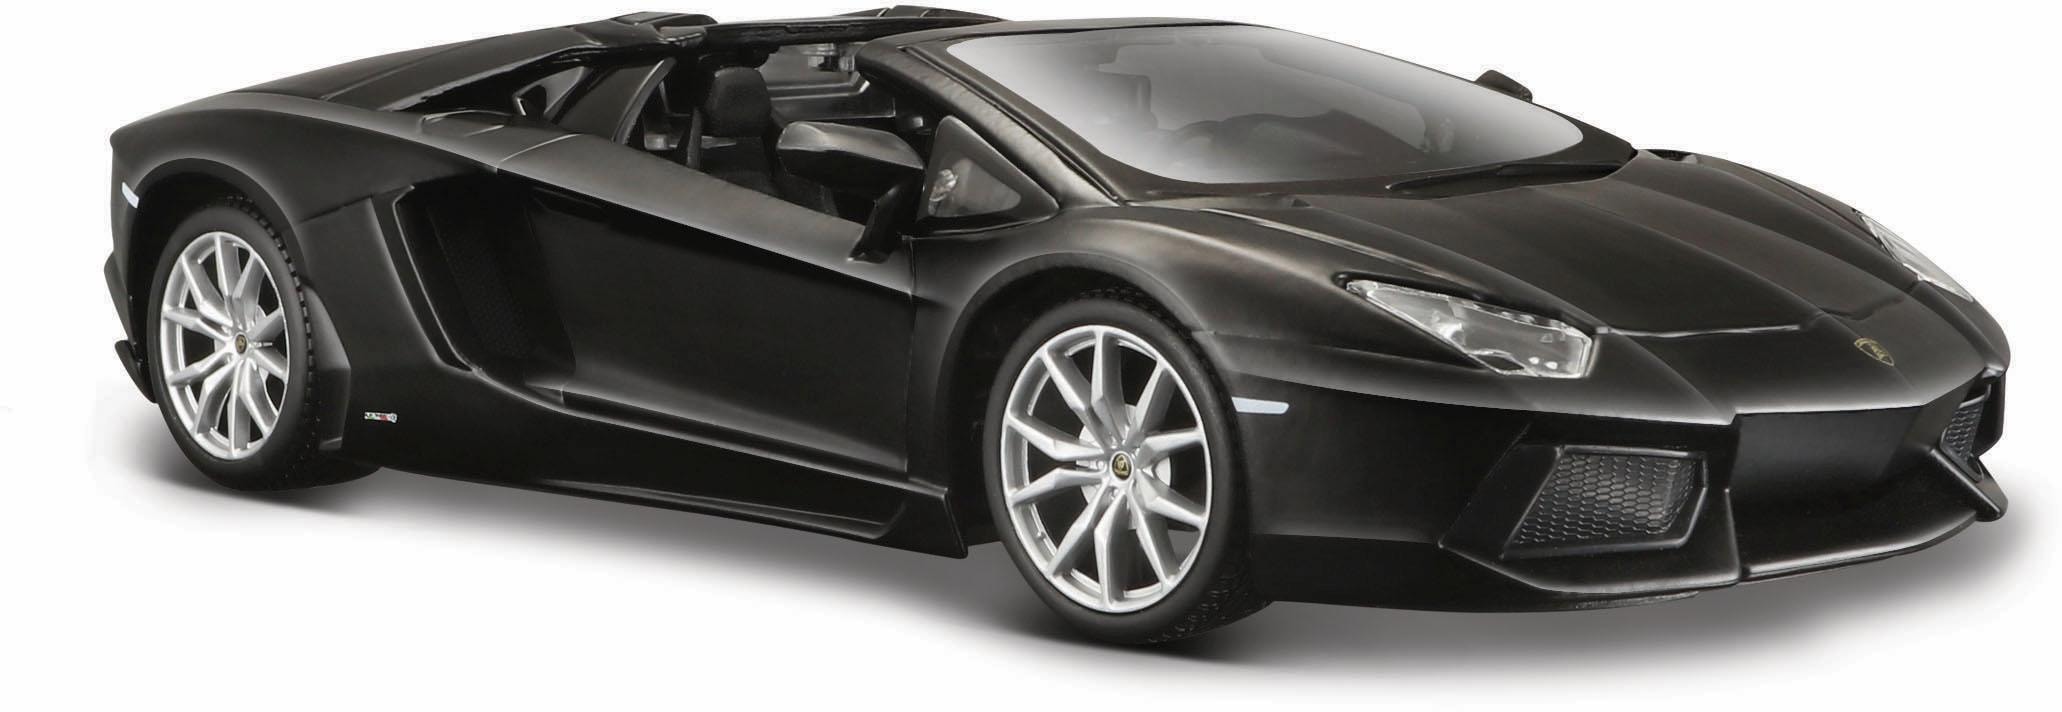 Sammlerauto »Dull Black Collection, Lamborghini Aventador LP-700-4 Roadster, 1:24«,...